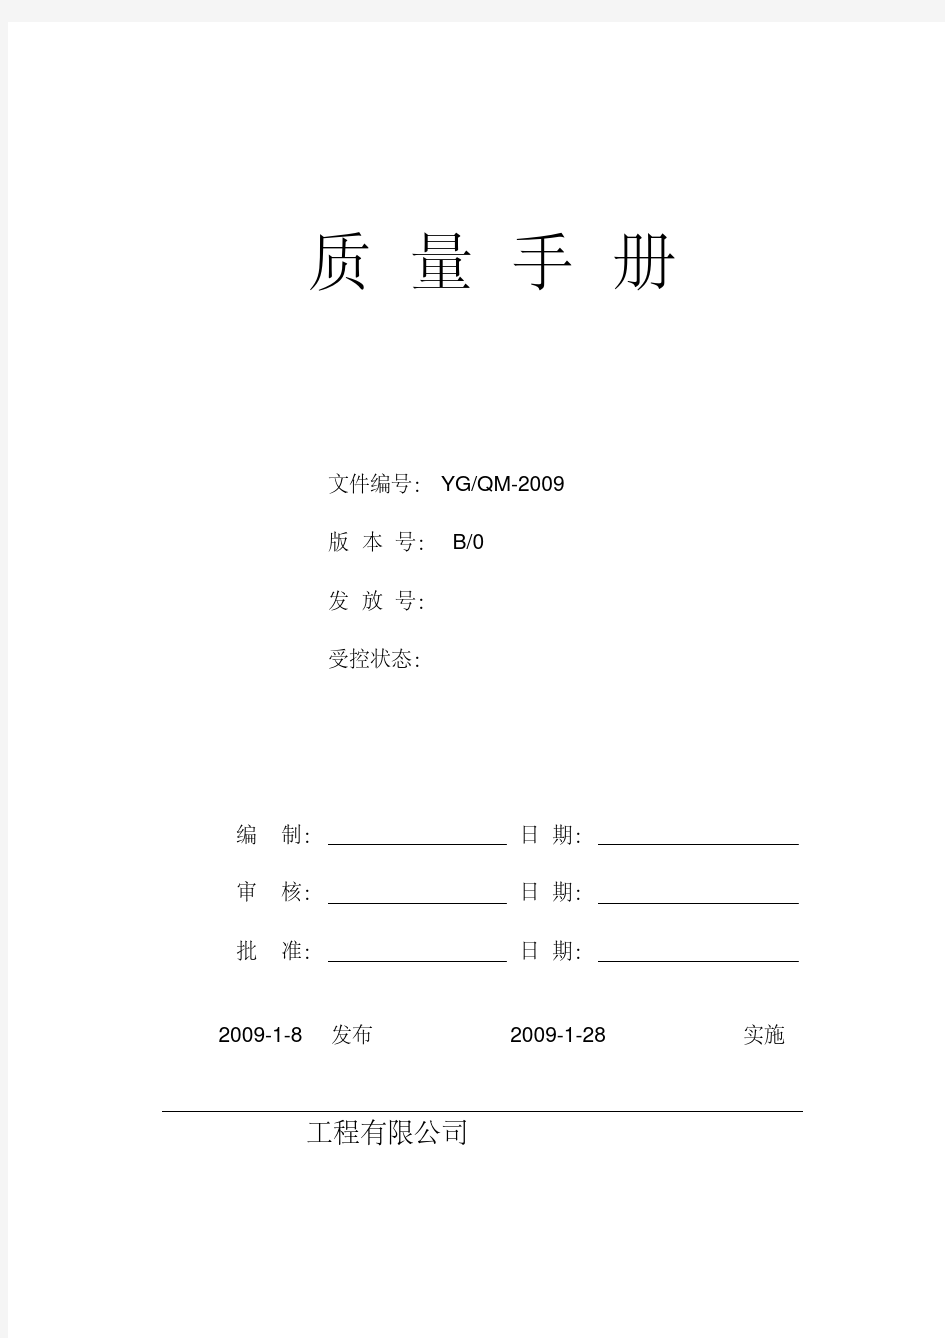 最新完整的质量管理手册.pdf